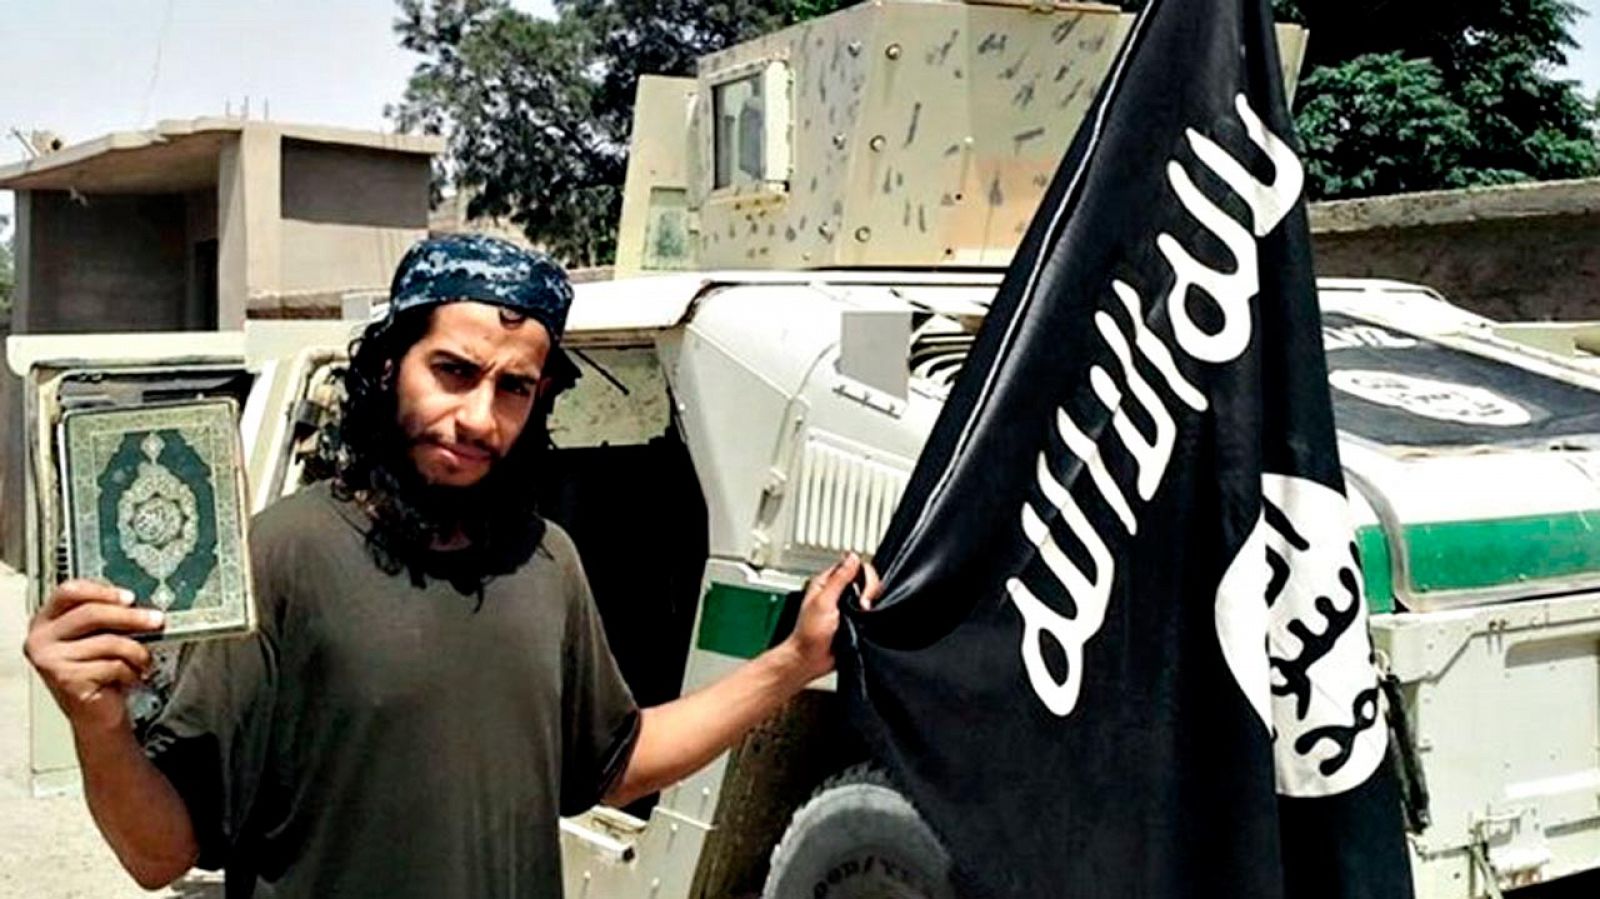 Imagen sin fechar del presunto yihadista Abdelhamid Abaaoud, publicada en la revista 'Dabiq', que edita en internet el Estado Islámico